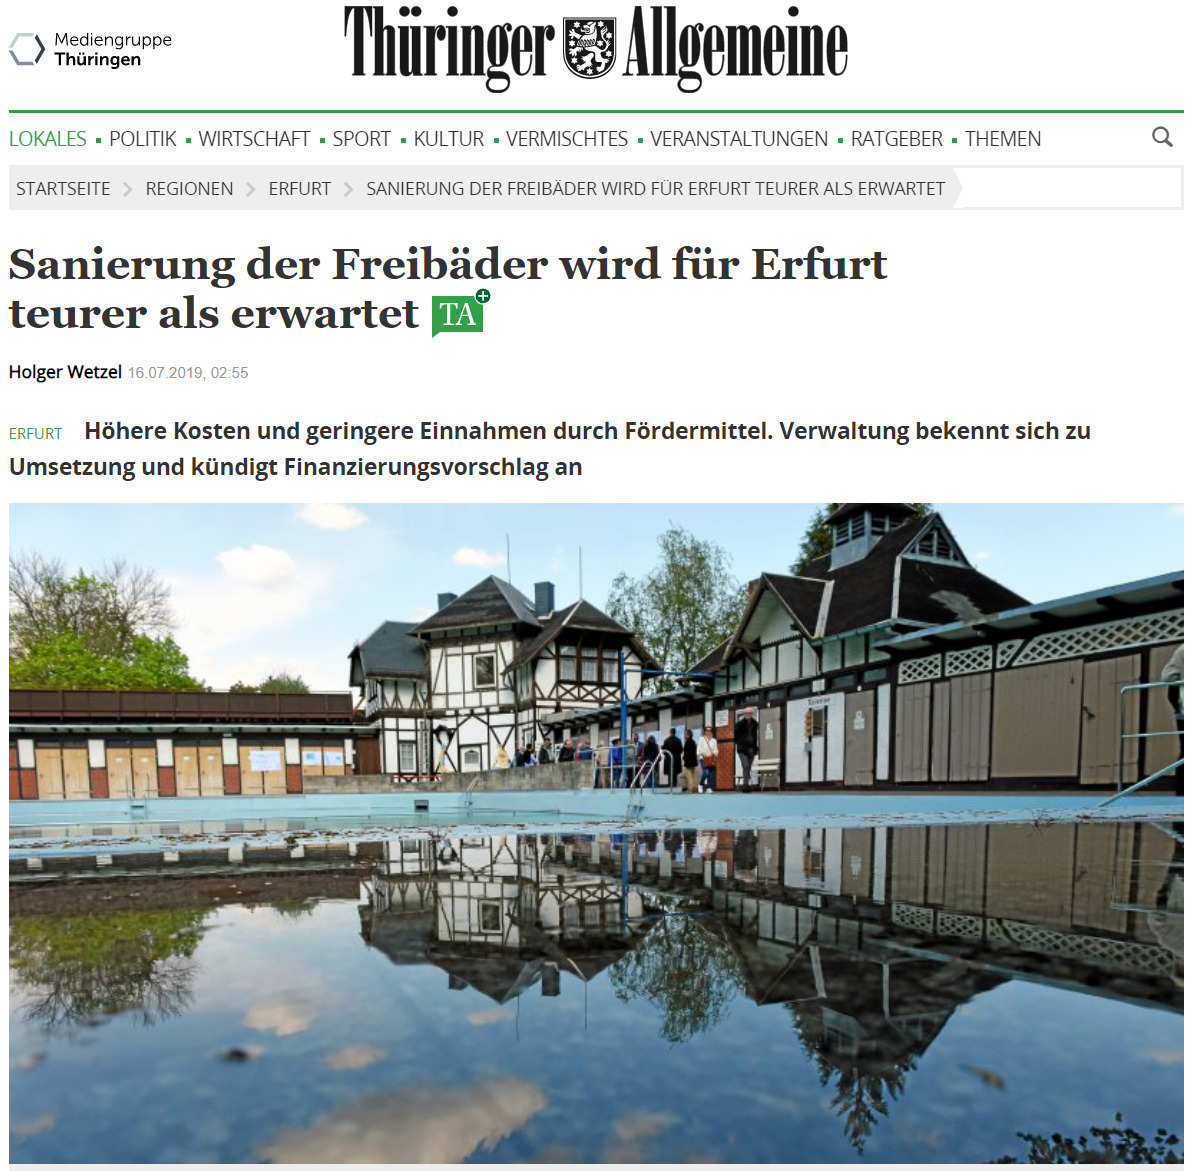 Presse: Sanierung der Freibäder wird für Erfurt teurer als erwartet, Bild: Quelle: TA 15.7.2019, Text: Holger Wetzel